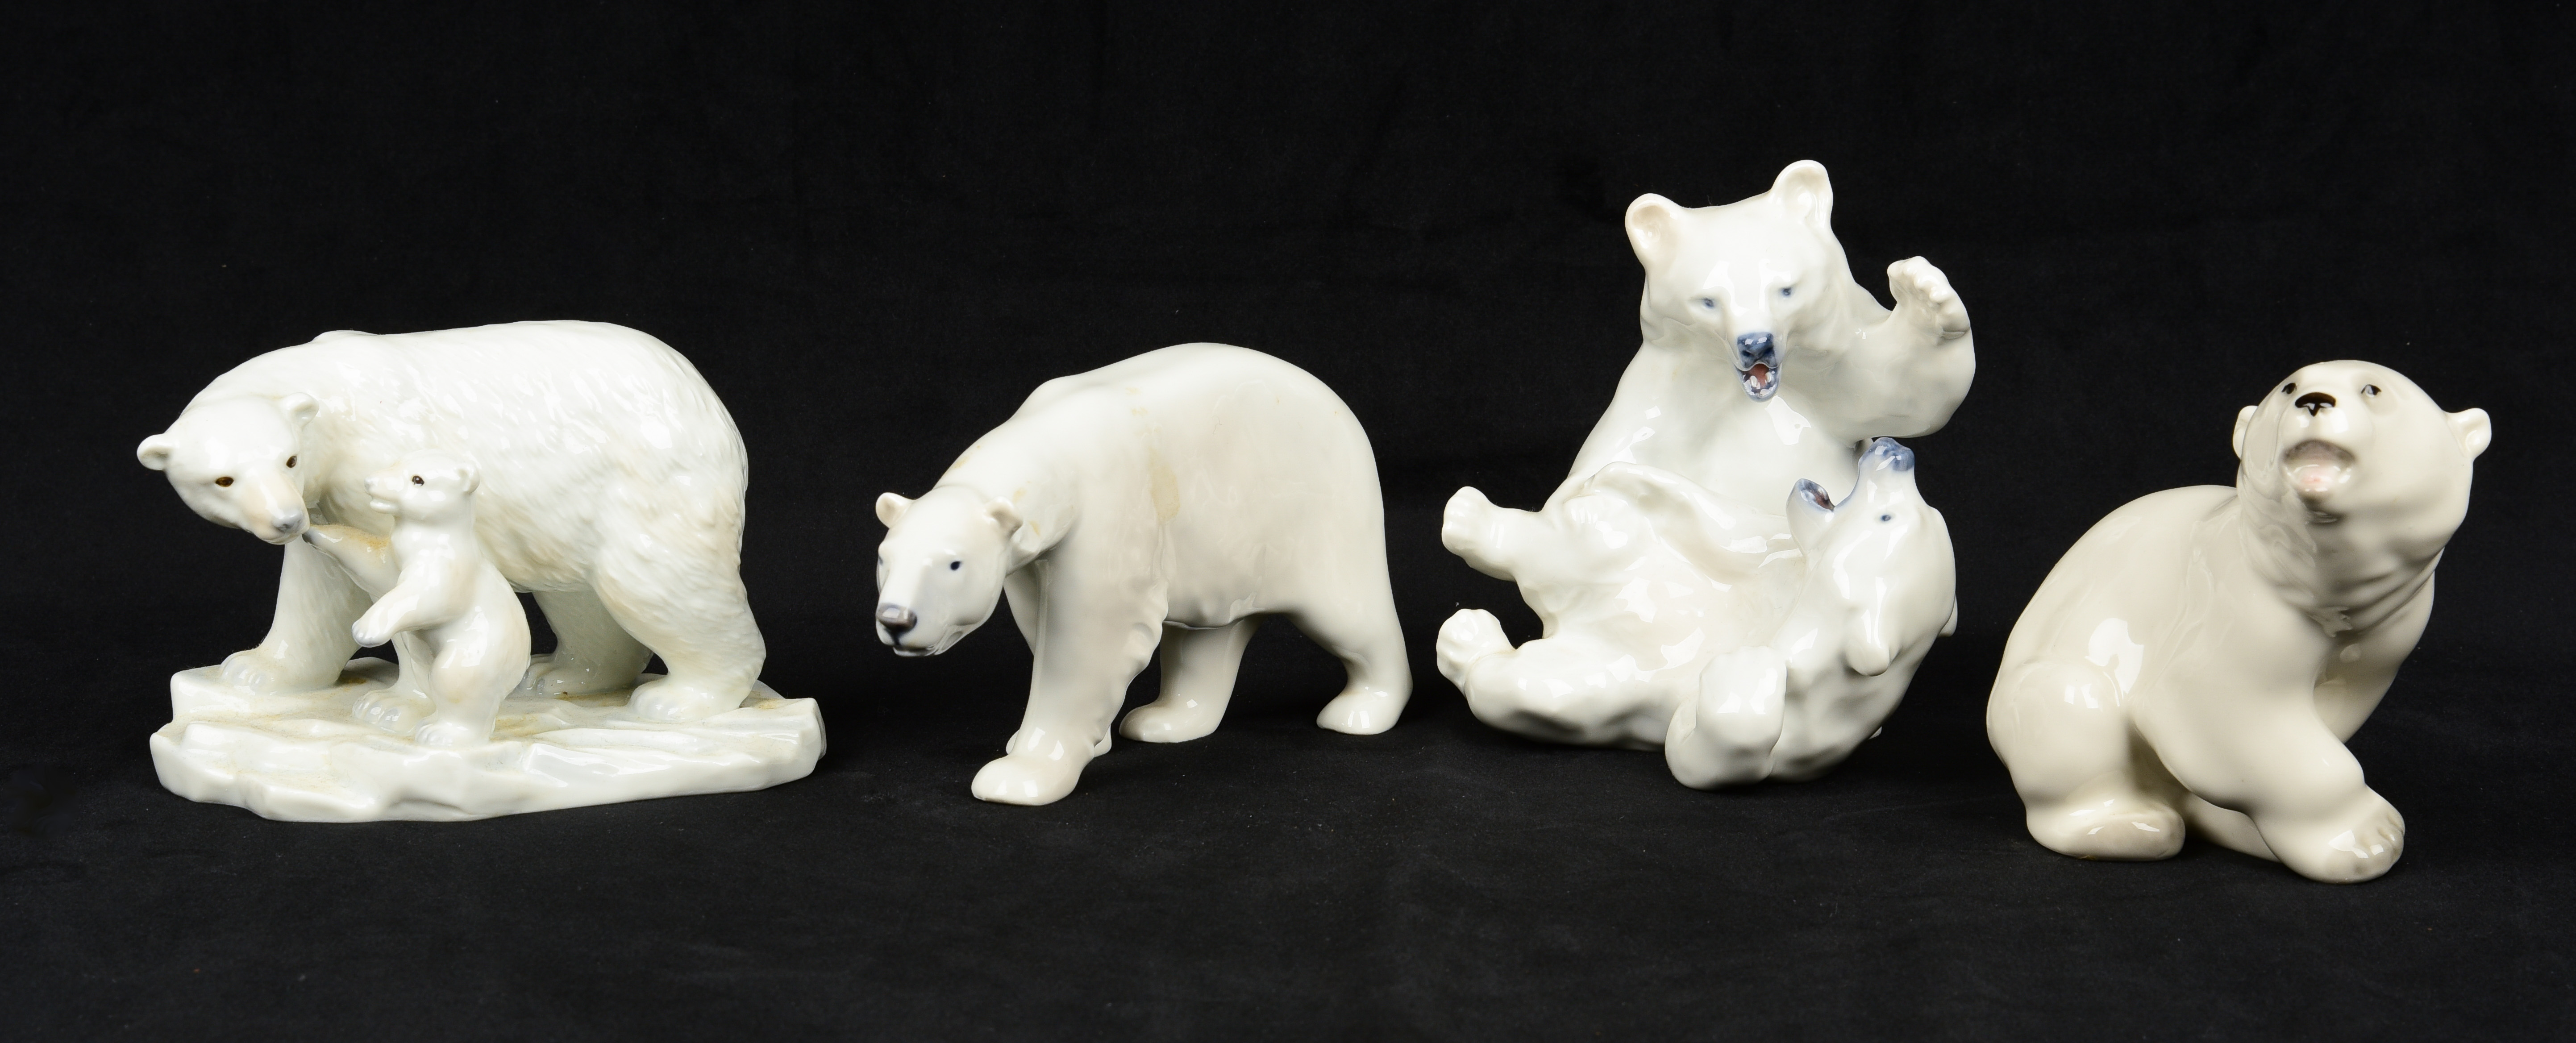  4 Porcelain polar bear figurines  3b1037